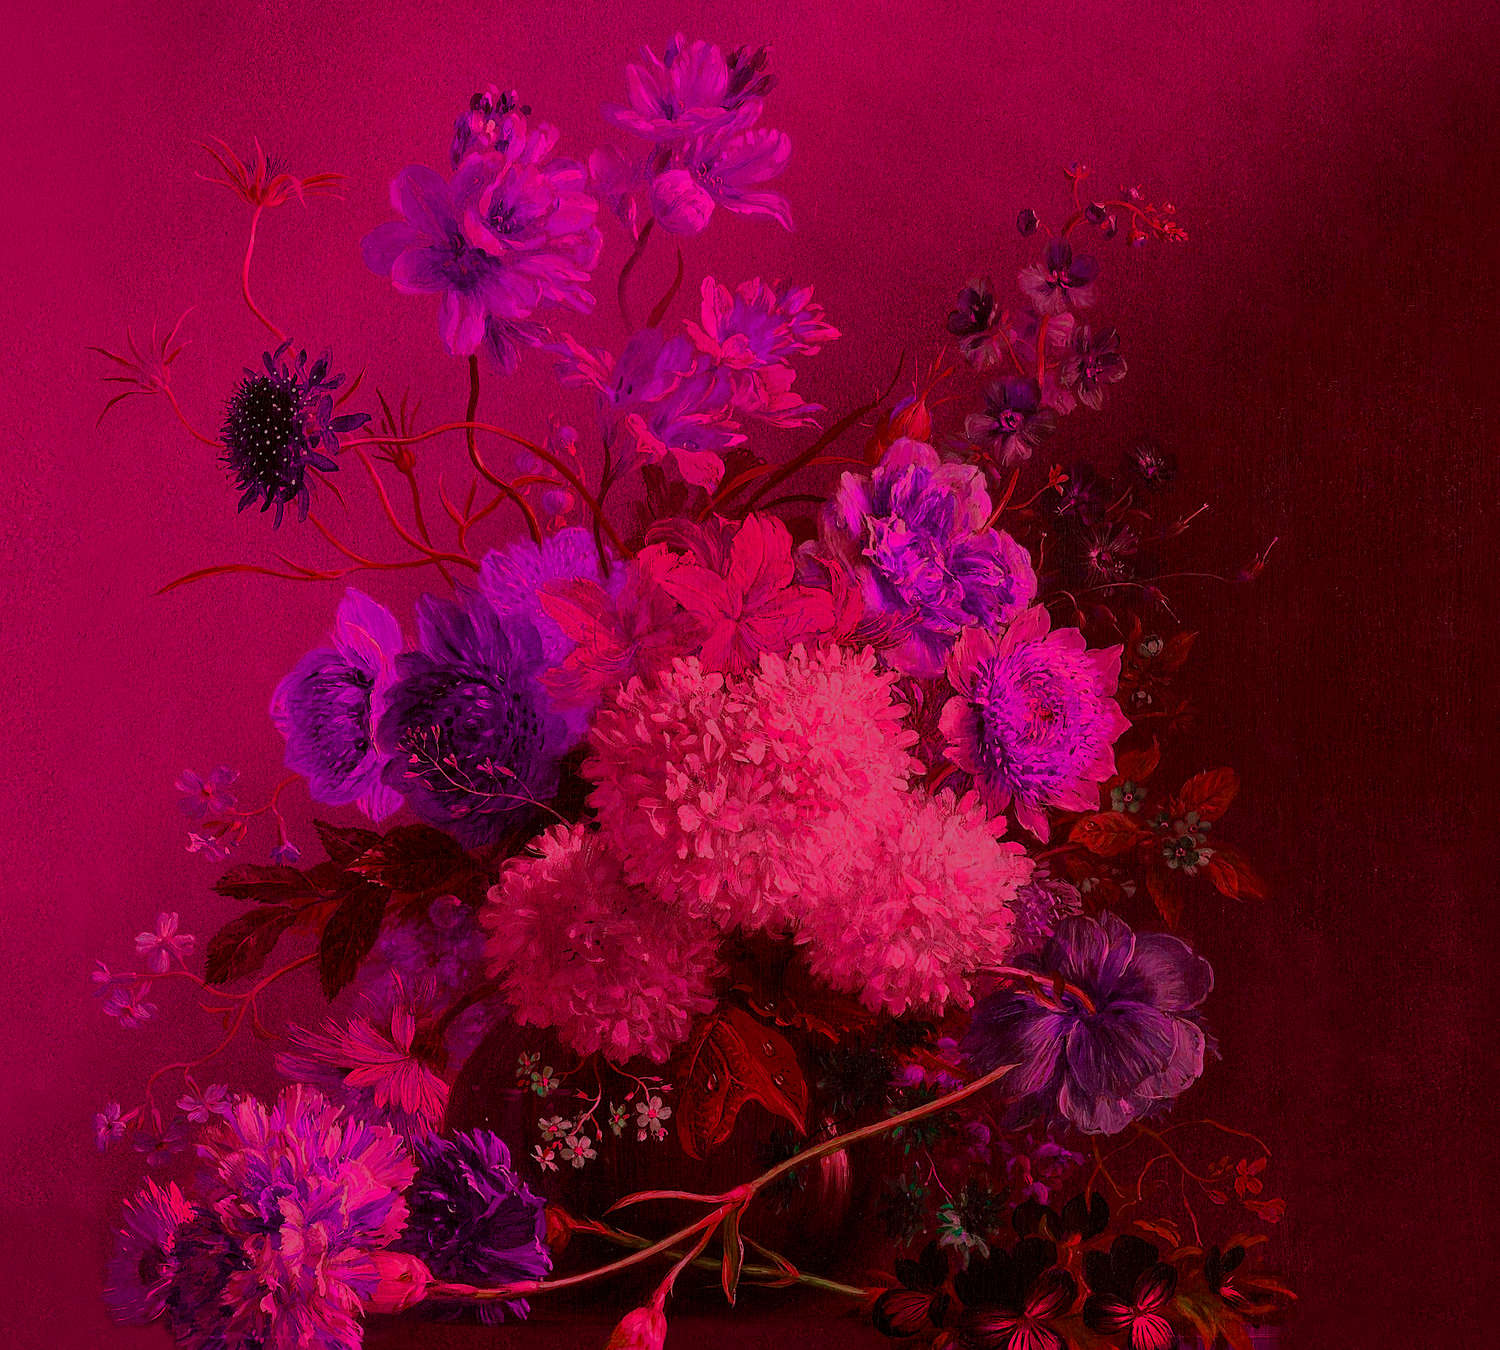             Neon Behang met Bloemen Stilleven - Paars, Roze
        